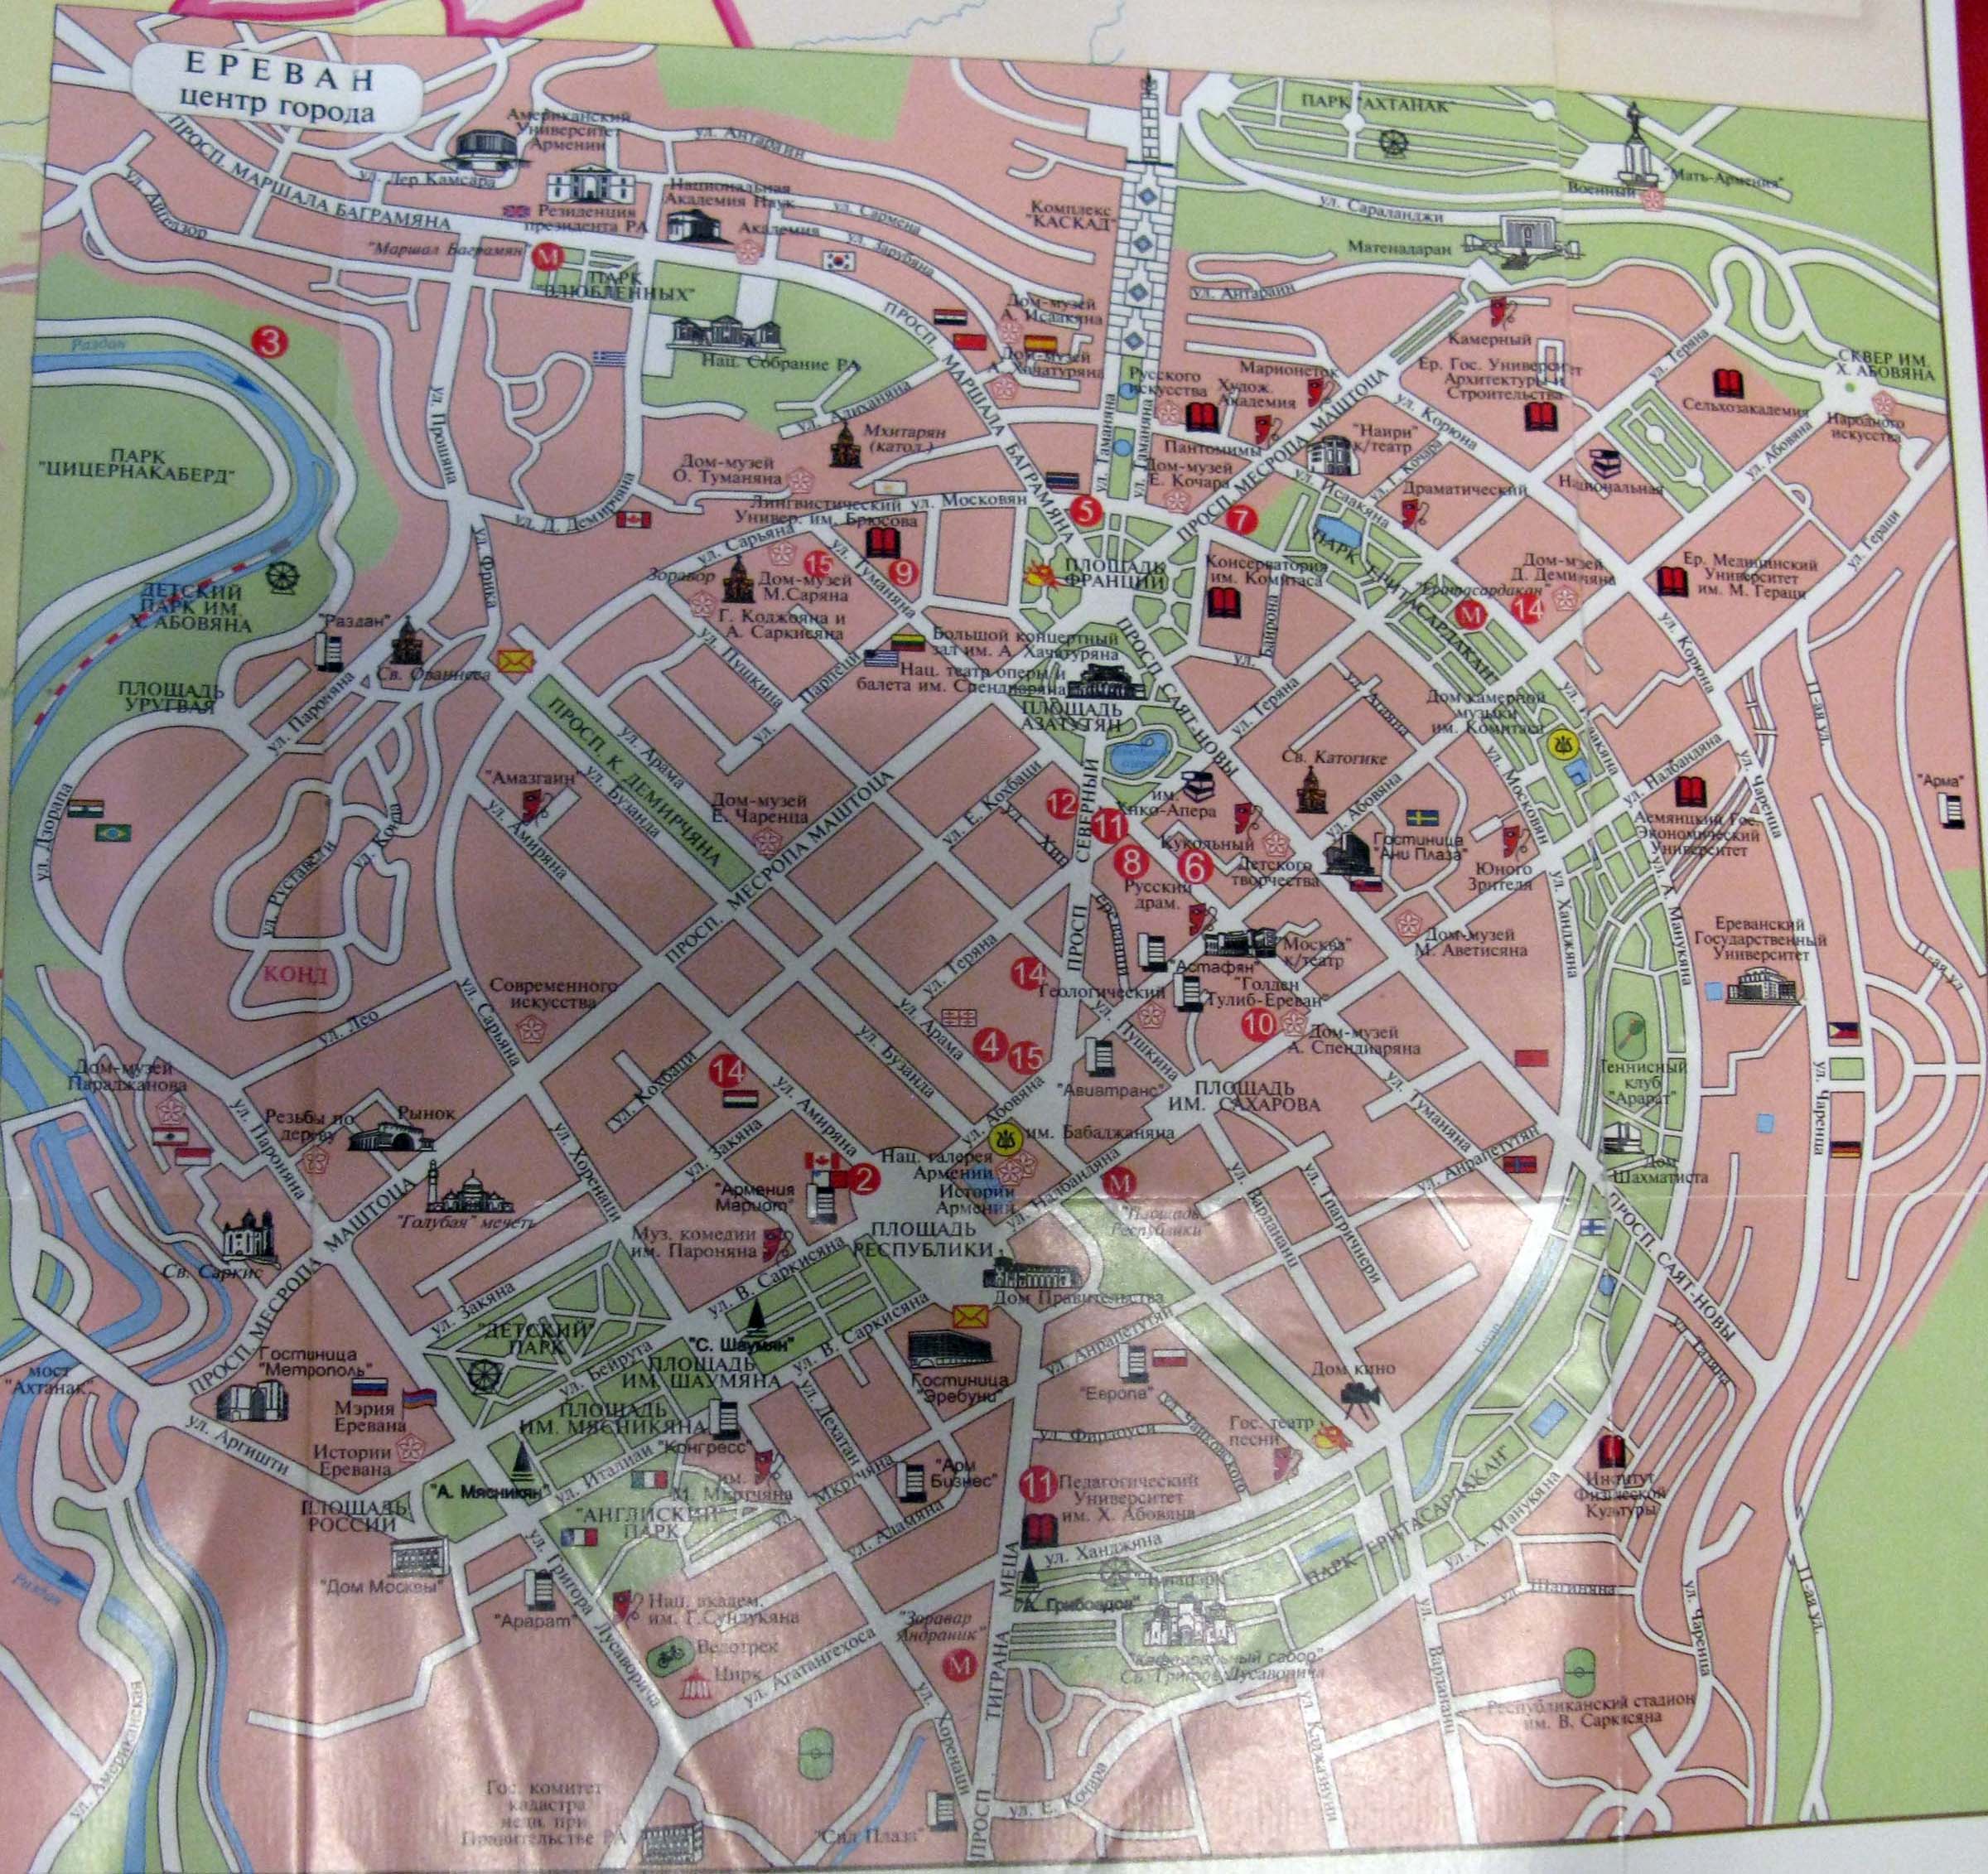 Сайт еревана на русском. Центр Еревана на карте. Карта города Еревана с улицами. Достопримечательности Еревана на карте. Ереван план города.